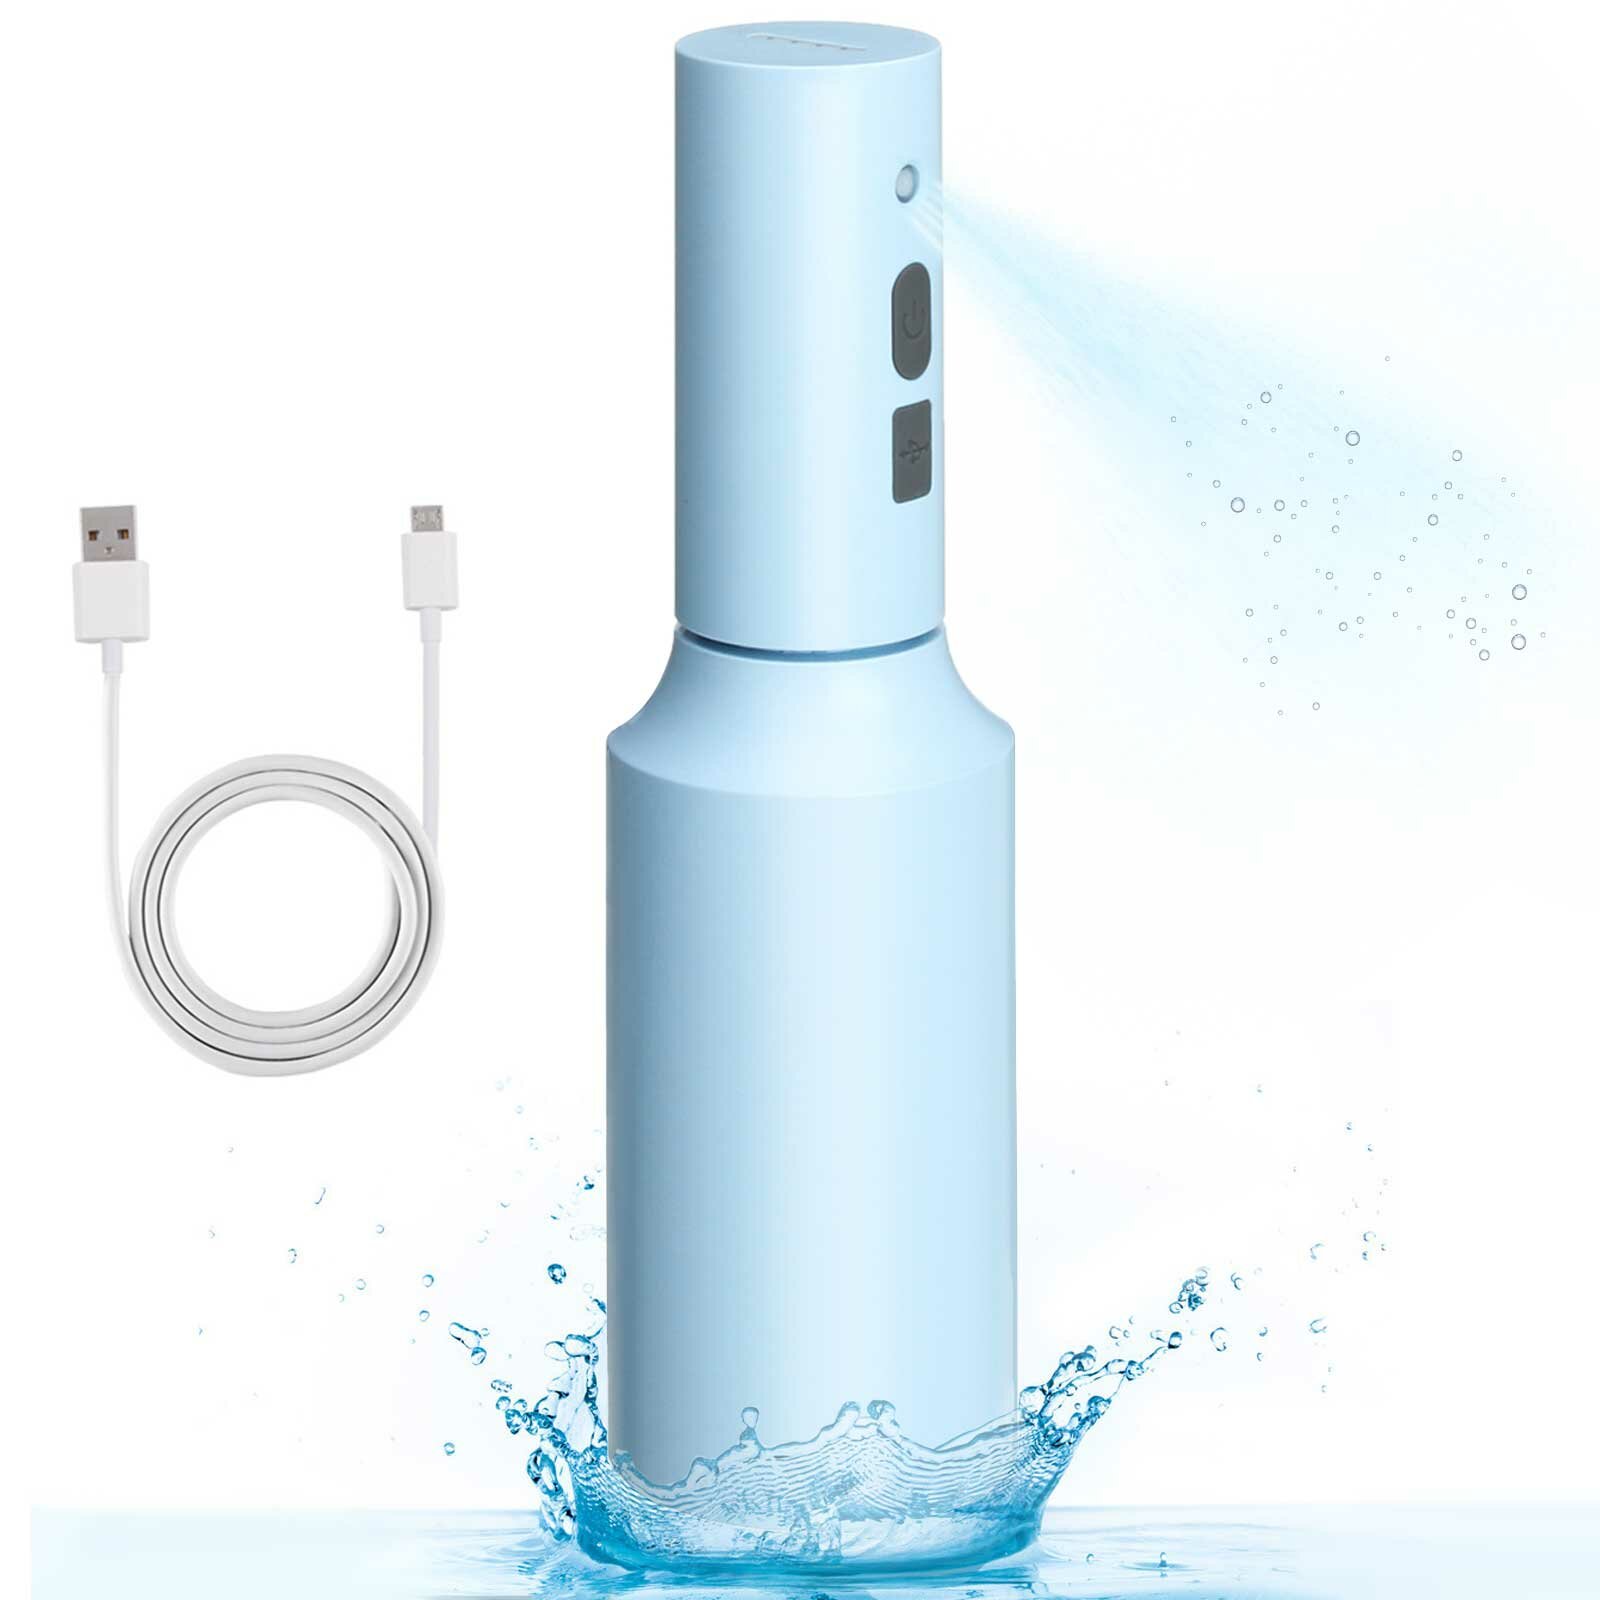 JETEVEN Disinfectant Dispenser USB Charging Large Capacity Soap Dispenser Handheld Sprayer